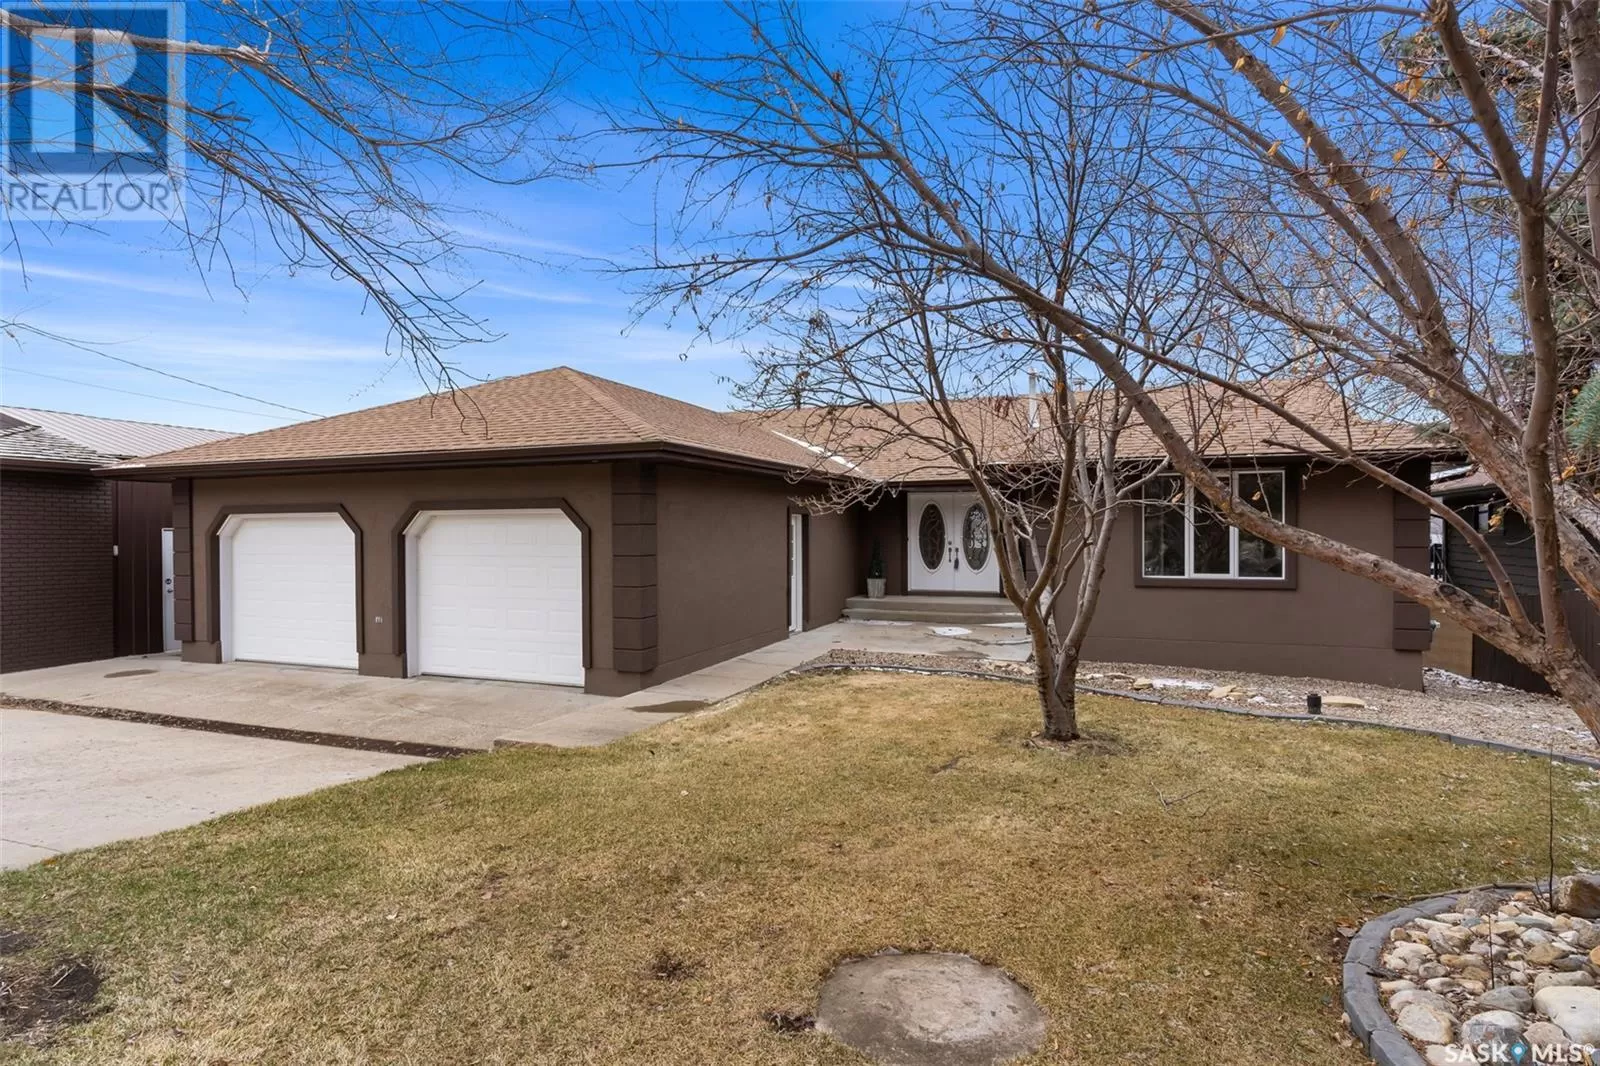 House for rent: 364 Pasqua Lake Road, Pasqua Lake, Saskatchewan S0G 1S0